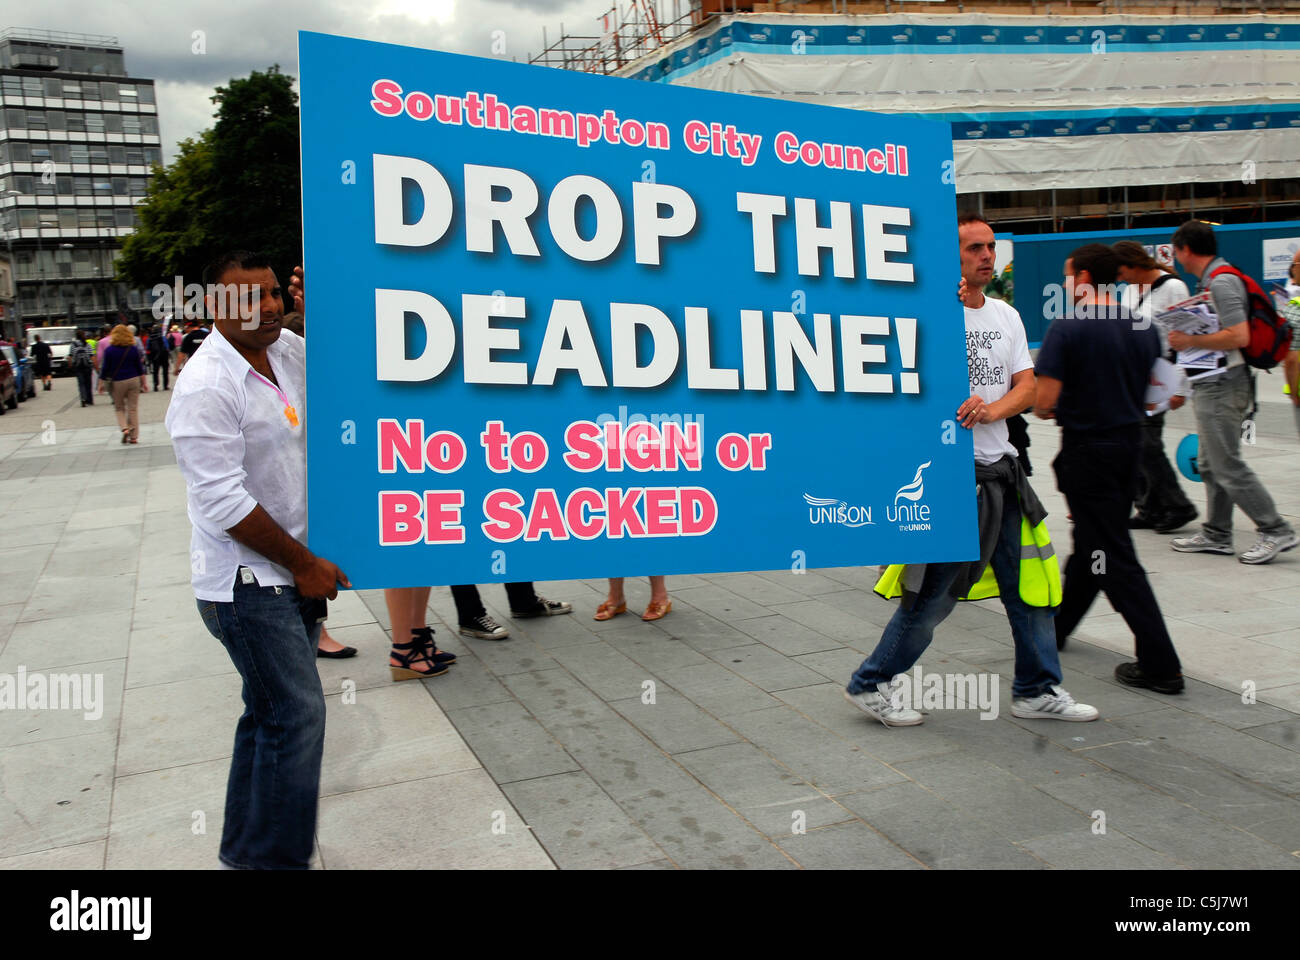 Beschäftigten im öffentlichen Dienst auffällig während protestieren gegen Kürzungen der öffentlichen Sektor & Southampton Stadtrat, 30. Juni 2011. Stockfoto